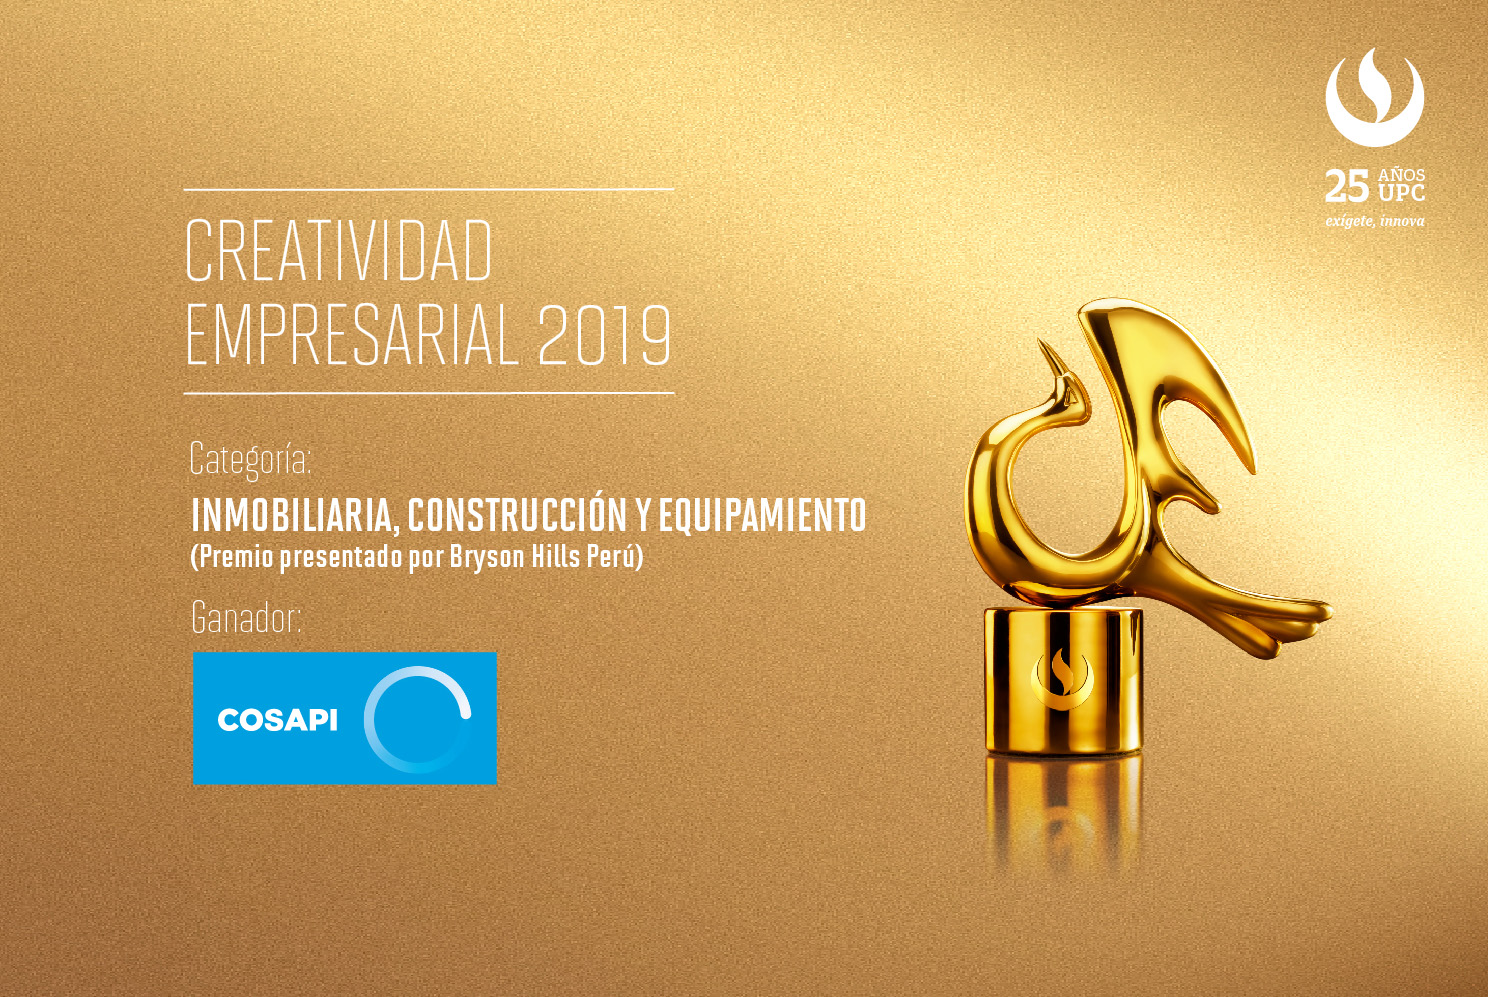 Creatividad Empresarial 2019: COSAPI fue premiada en la categoría Inmobiliario, Construcción y Equipamiento